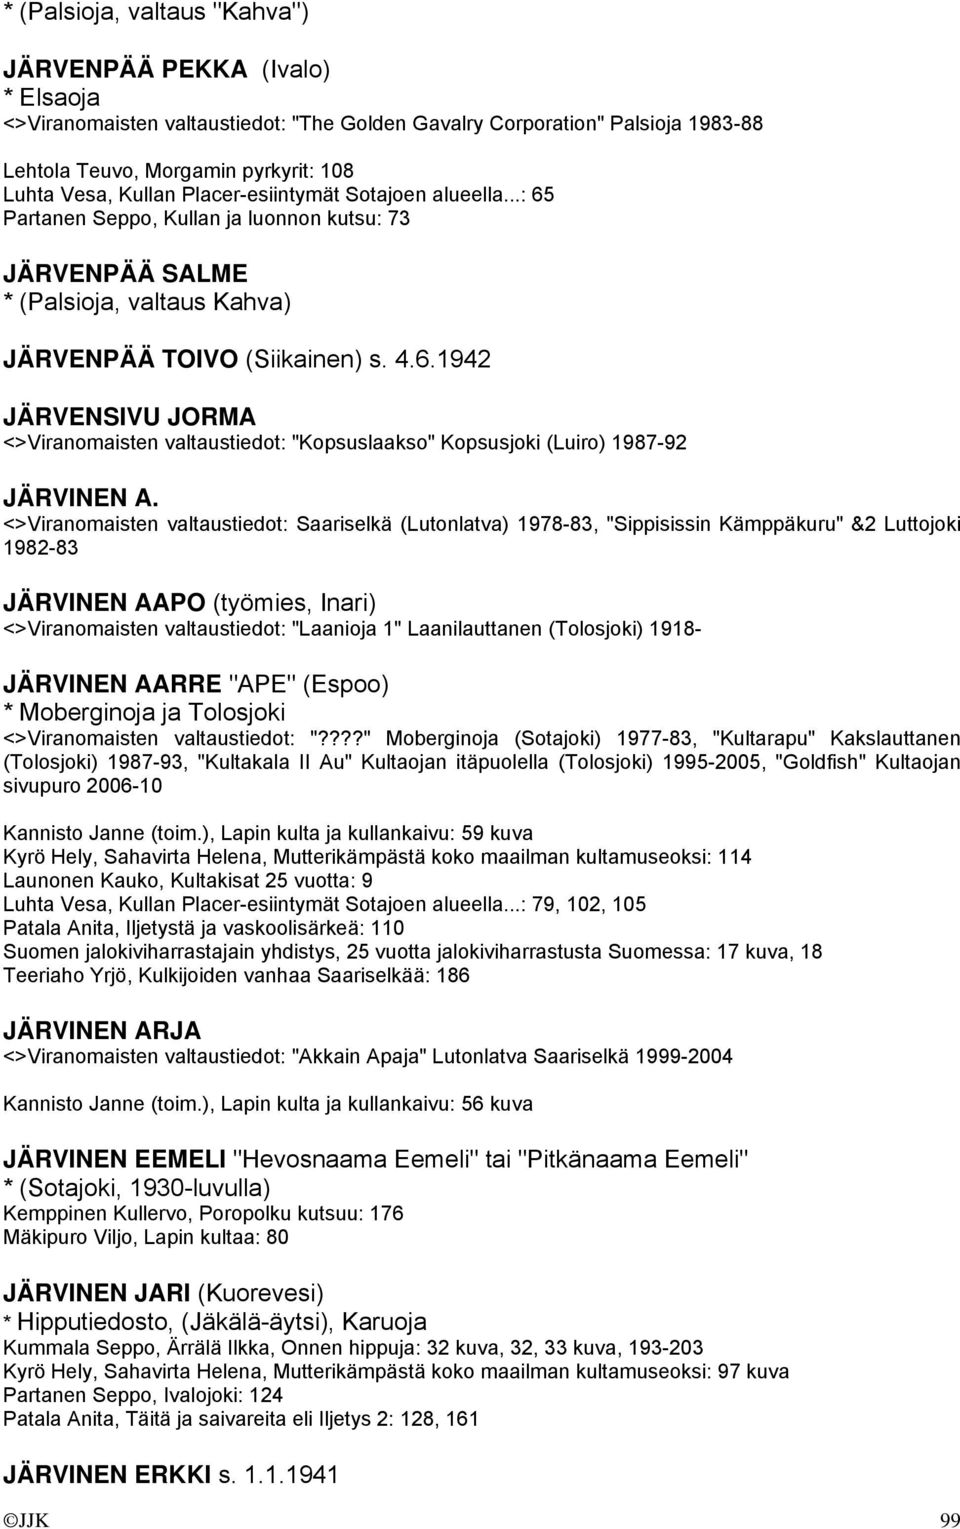 <>Viranomaisten valtaustiedot: Saariselkä (Lutonlatva) 1978-83, "Sippisissin Kämppäkuru" &2 Luttojoki 1982-83 JÄRVINEN AAPO (työmies, Inari) <>Viranomaisten valtaustiedot: "Laanioja 1" Laanilauttanen